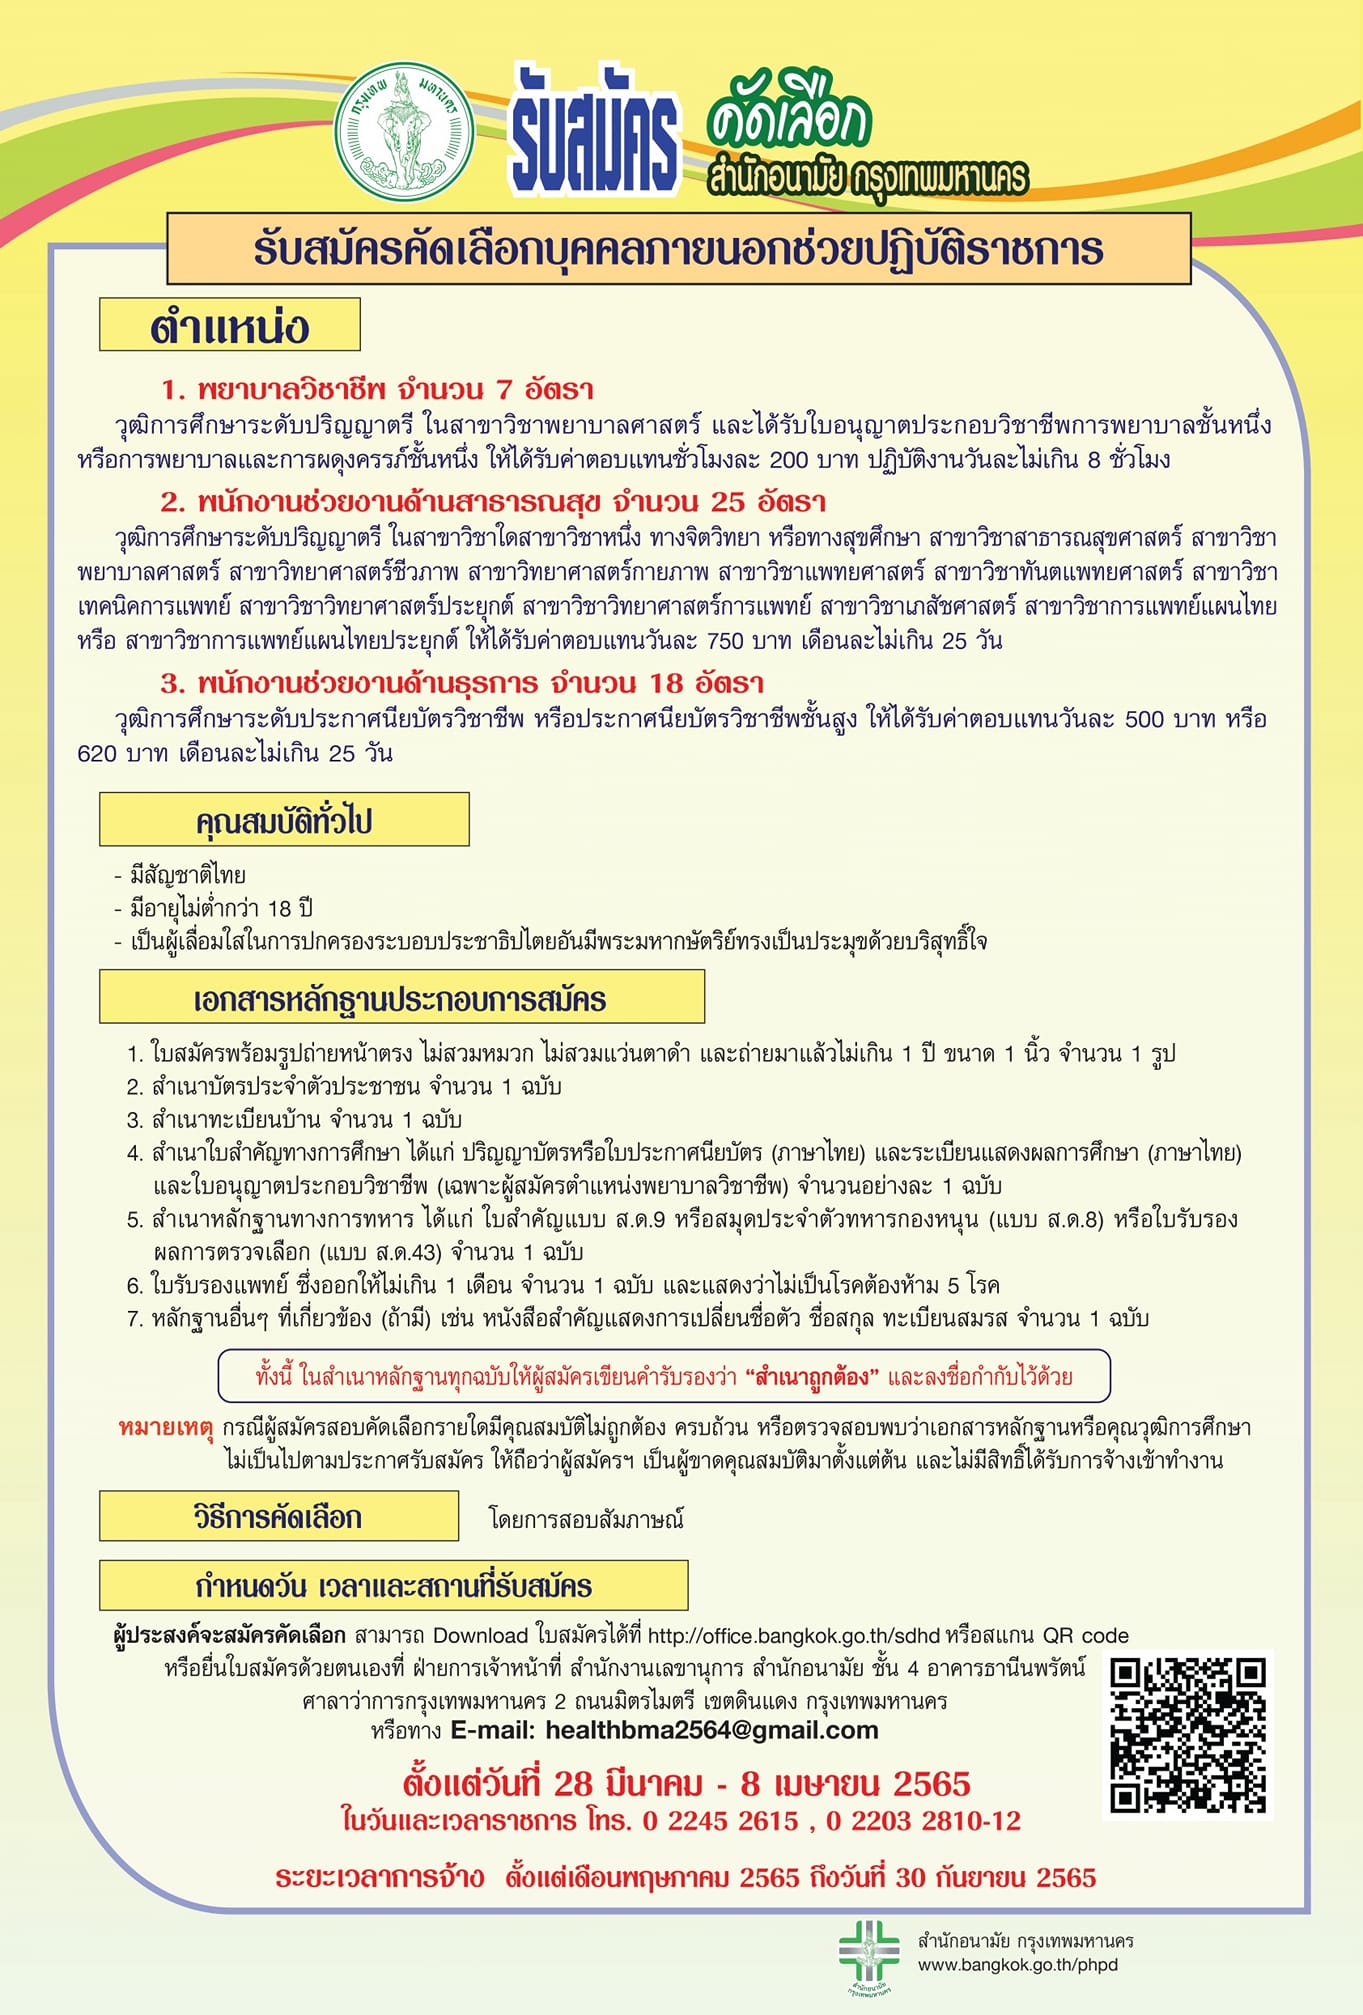 สำนักอนามัยกรุงเทพมหานคร รับสมัครคัดเลือกช่วยปฏิบัติราชการ 50 อัตรา เว็บไซต์ข่าวรับสมัครงานราชการล่าสุด